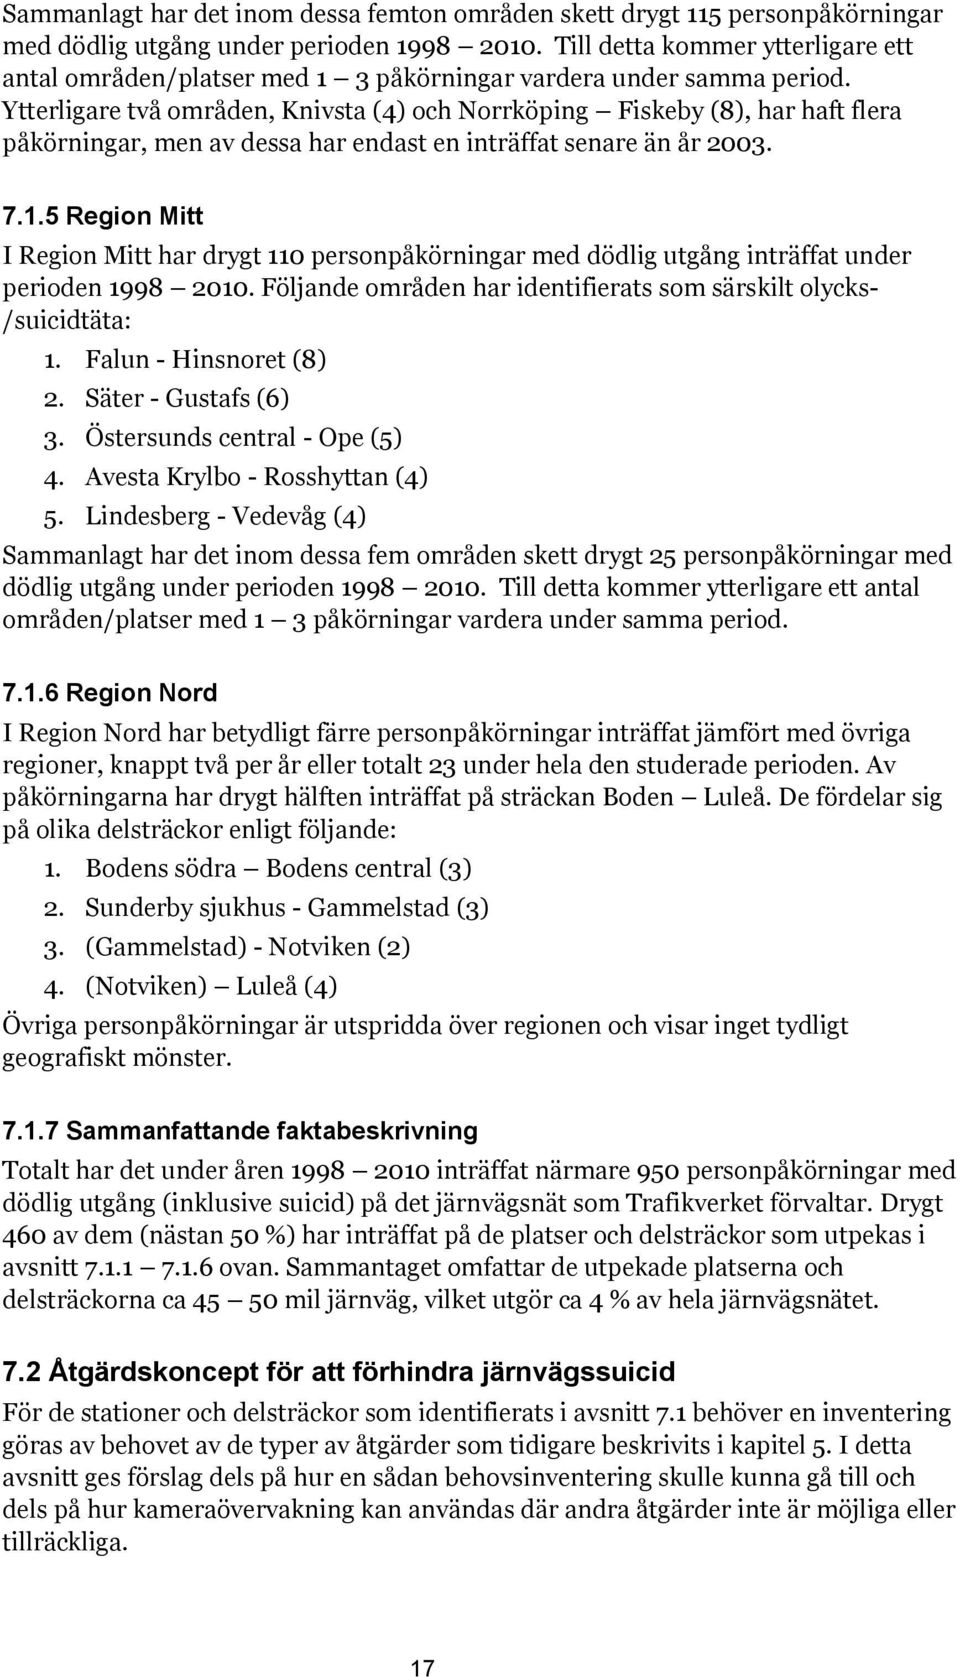 Ytterligare två områden, Knivsta (4) och Norrköping Fiskeby (8), har haft flera påkörningar, men av dessa har endast en inträffat senare än år 2003. 7.1.